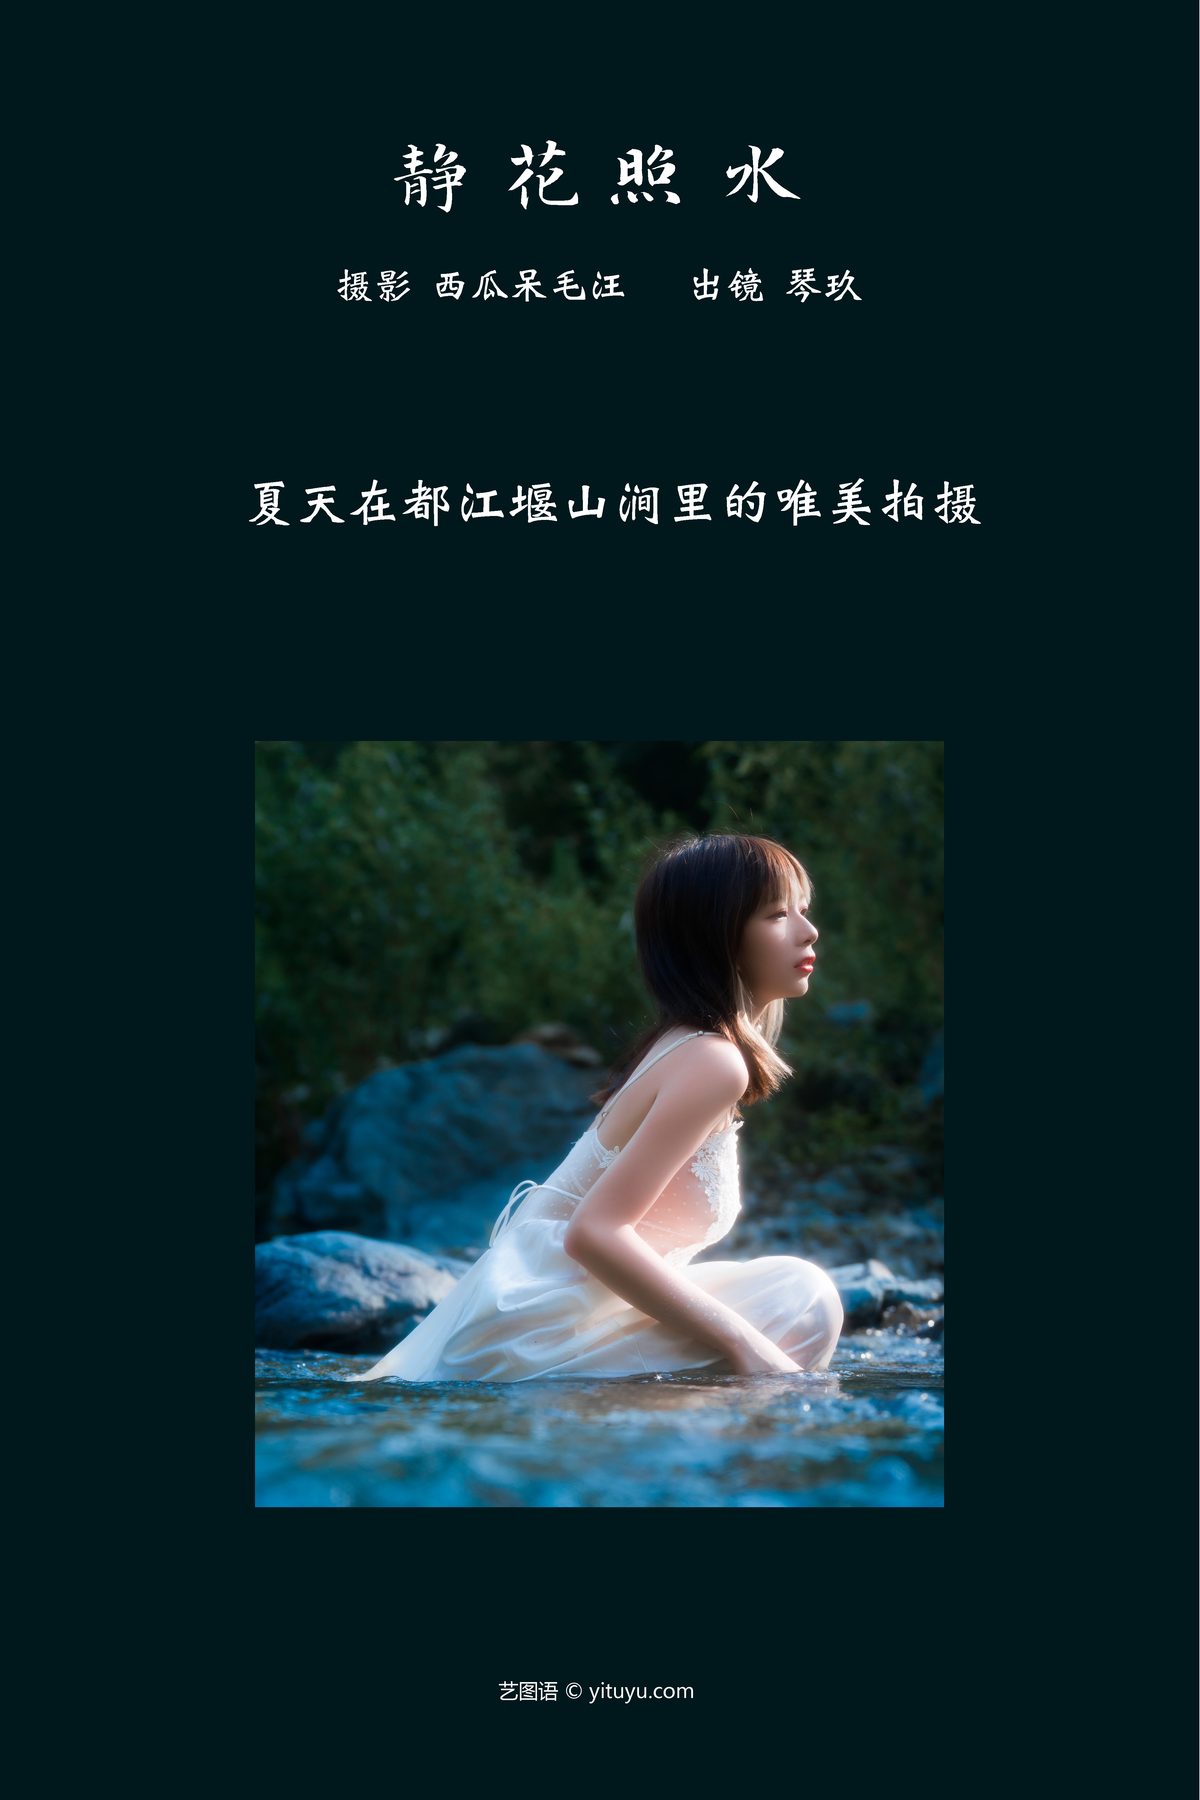 YiTuYu艺图语 Vol 3761 Qing Qing Qin Jiu 0002 0323960561.jpg